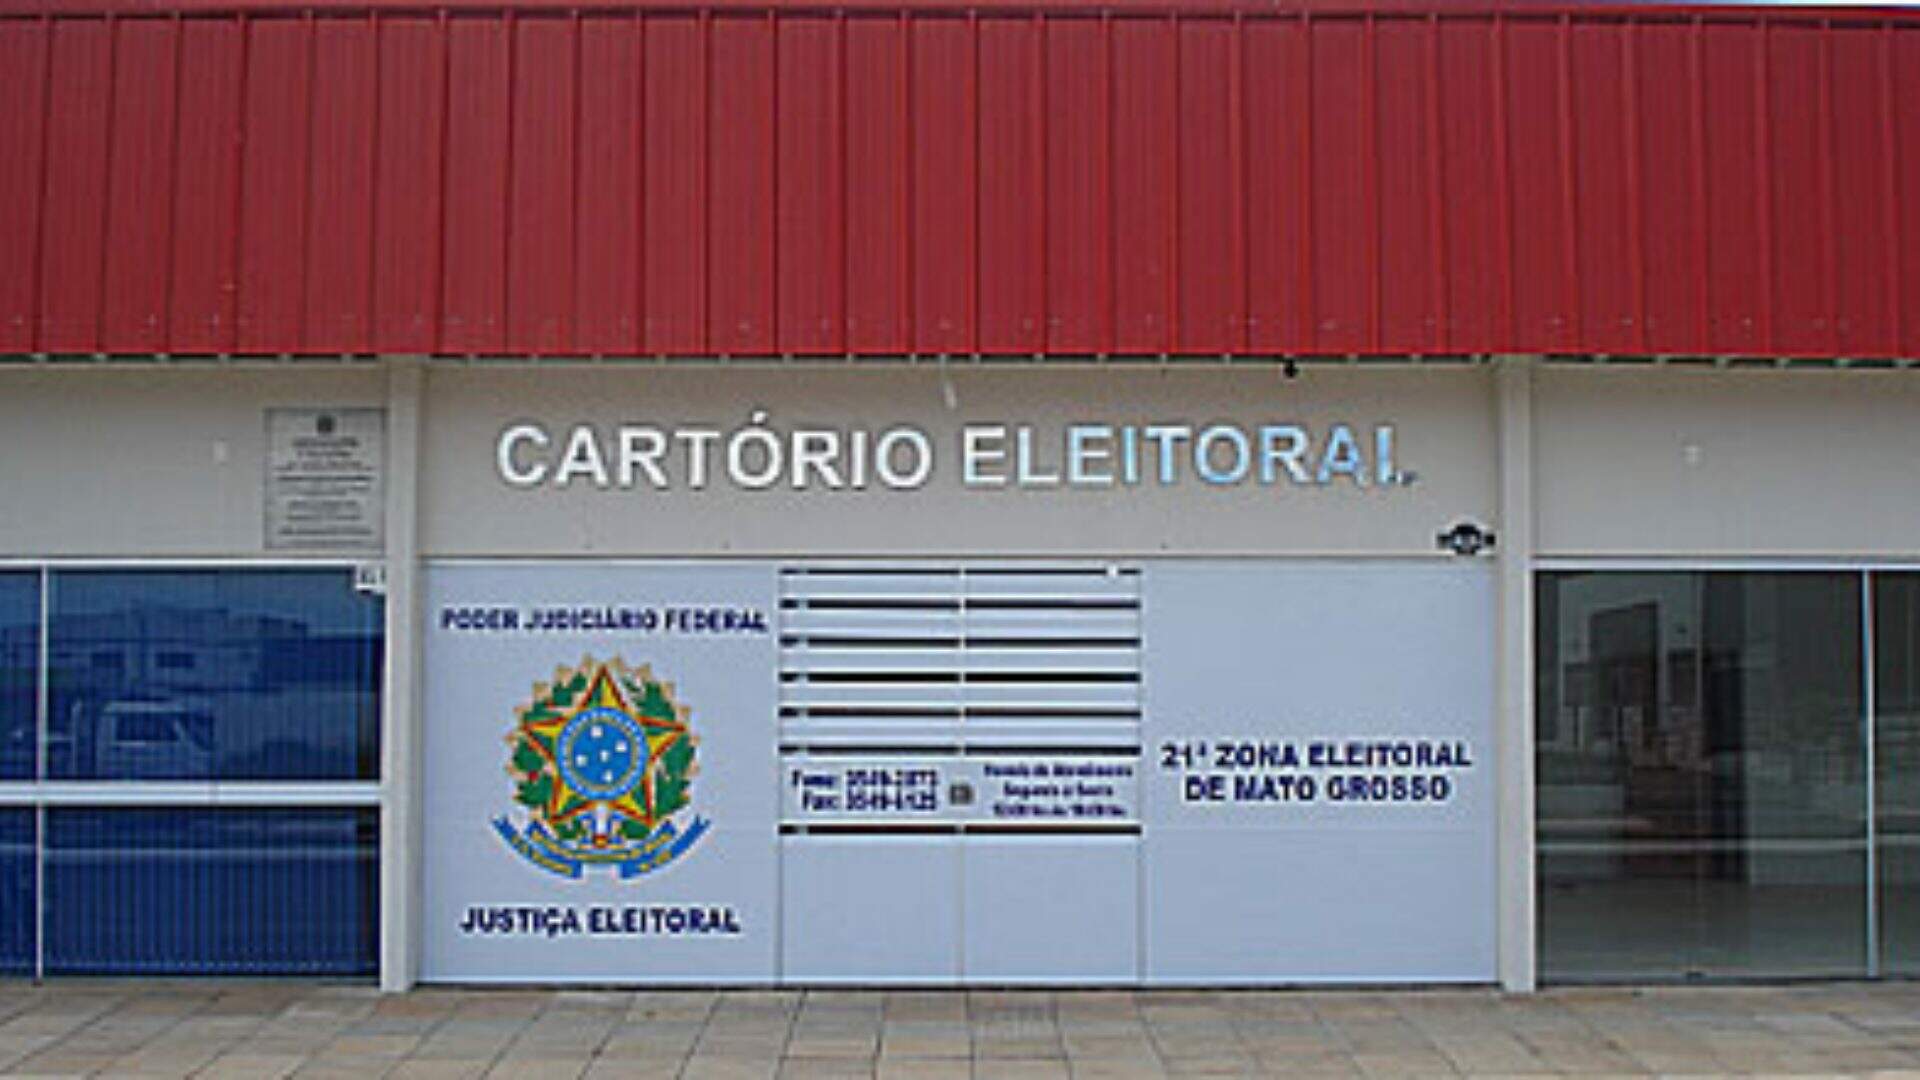 Cartório Eleitoral de Rio Verde do Mato Grosso não terá expediente em 16 de dezembro